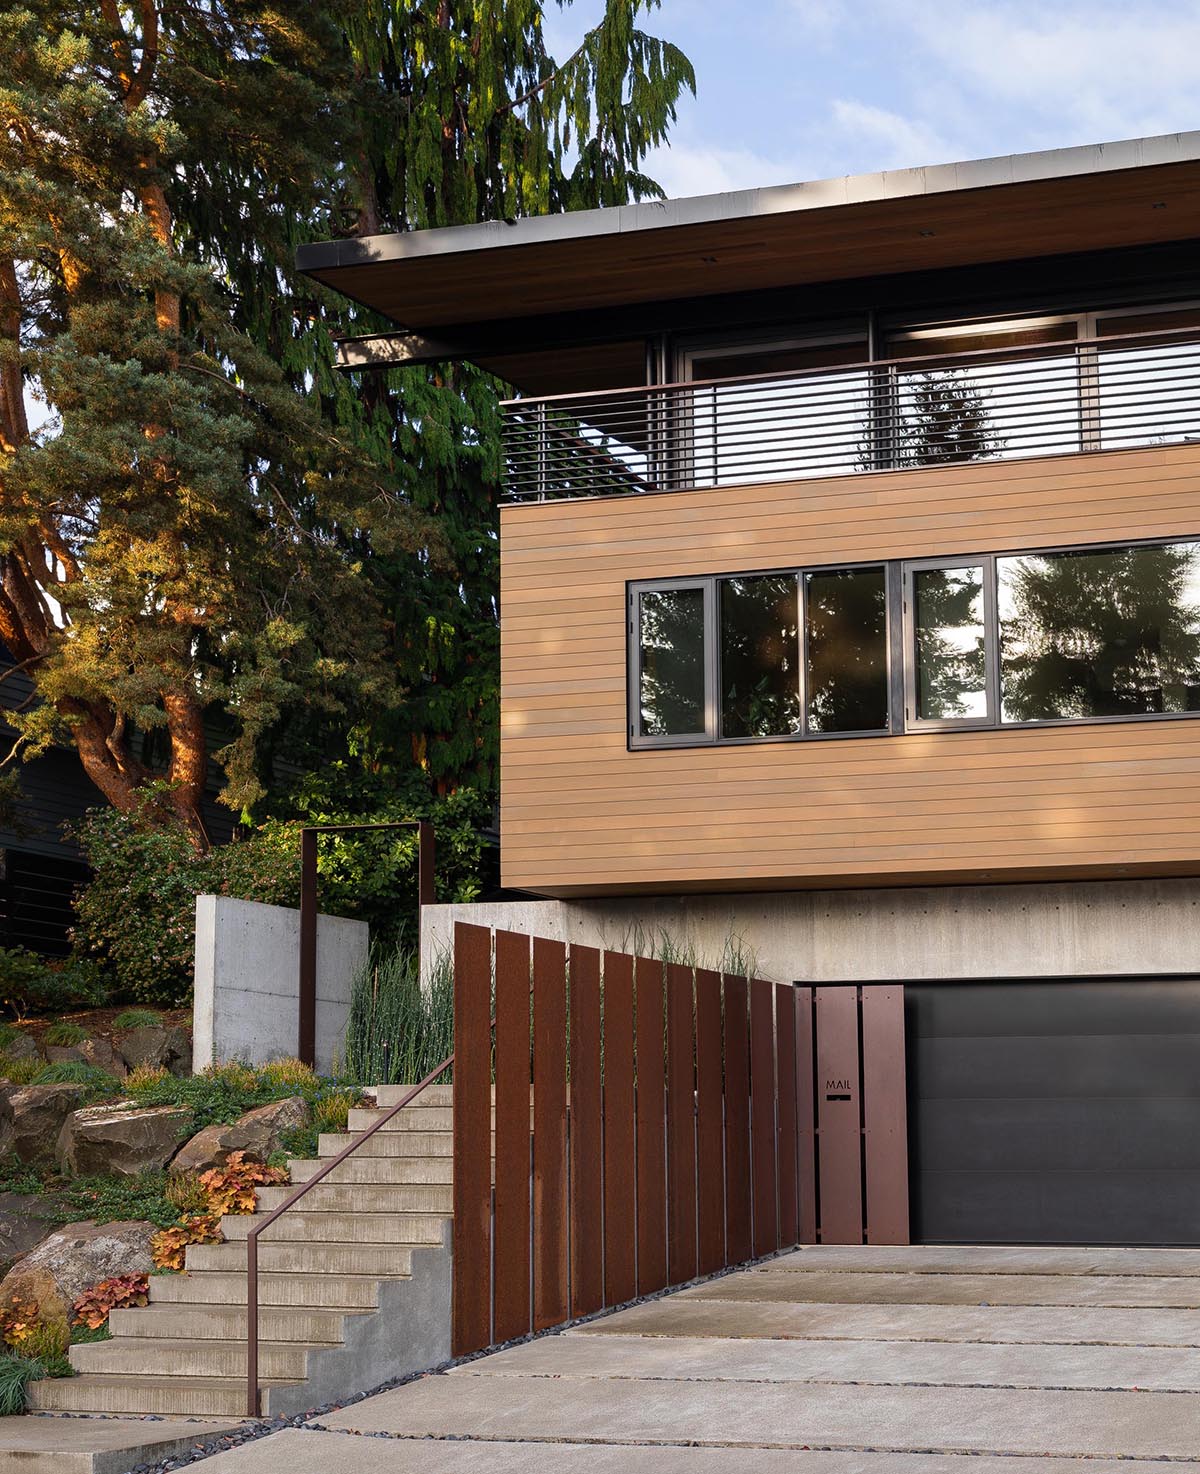 Фасад этого современного дома украшен бетоном, черной гаражной дверью, стальными элементами, деревянным сайдингом и ступенями, ведущими к входной двери.